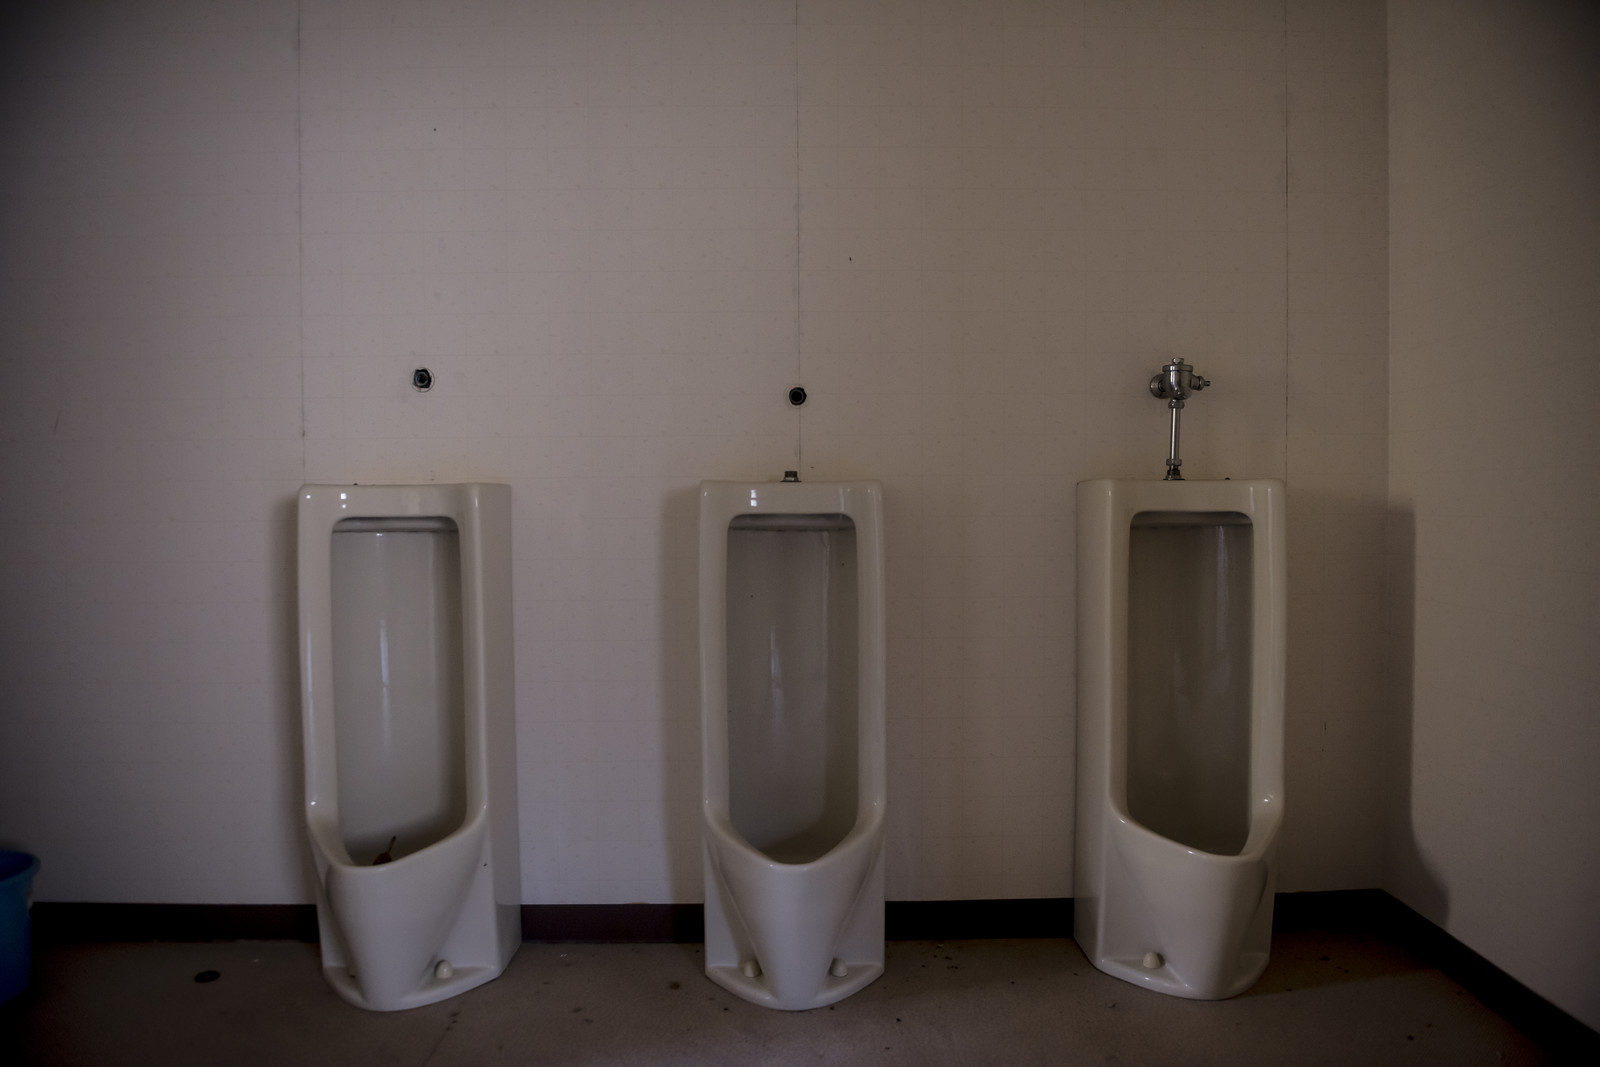 ある八戸の会社のトイレに現れた霊の体験談